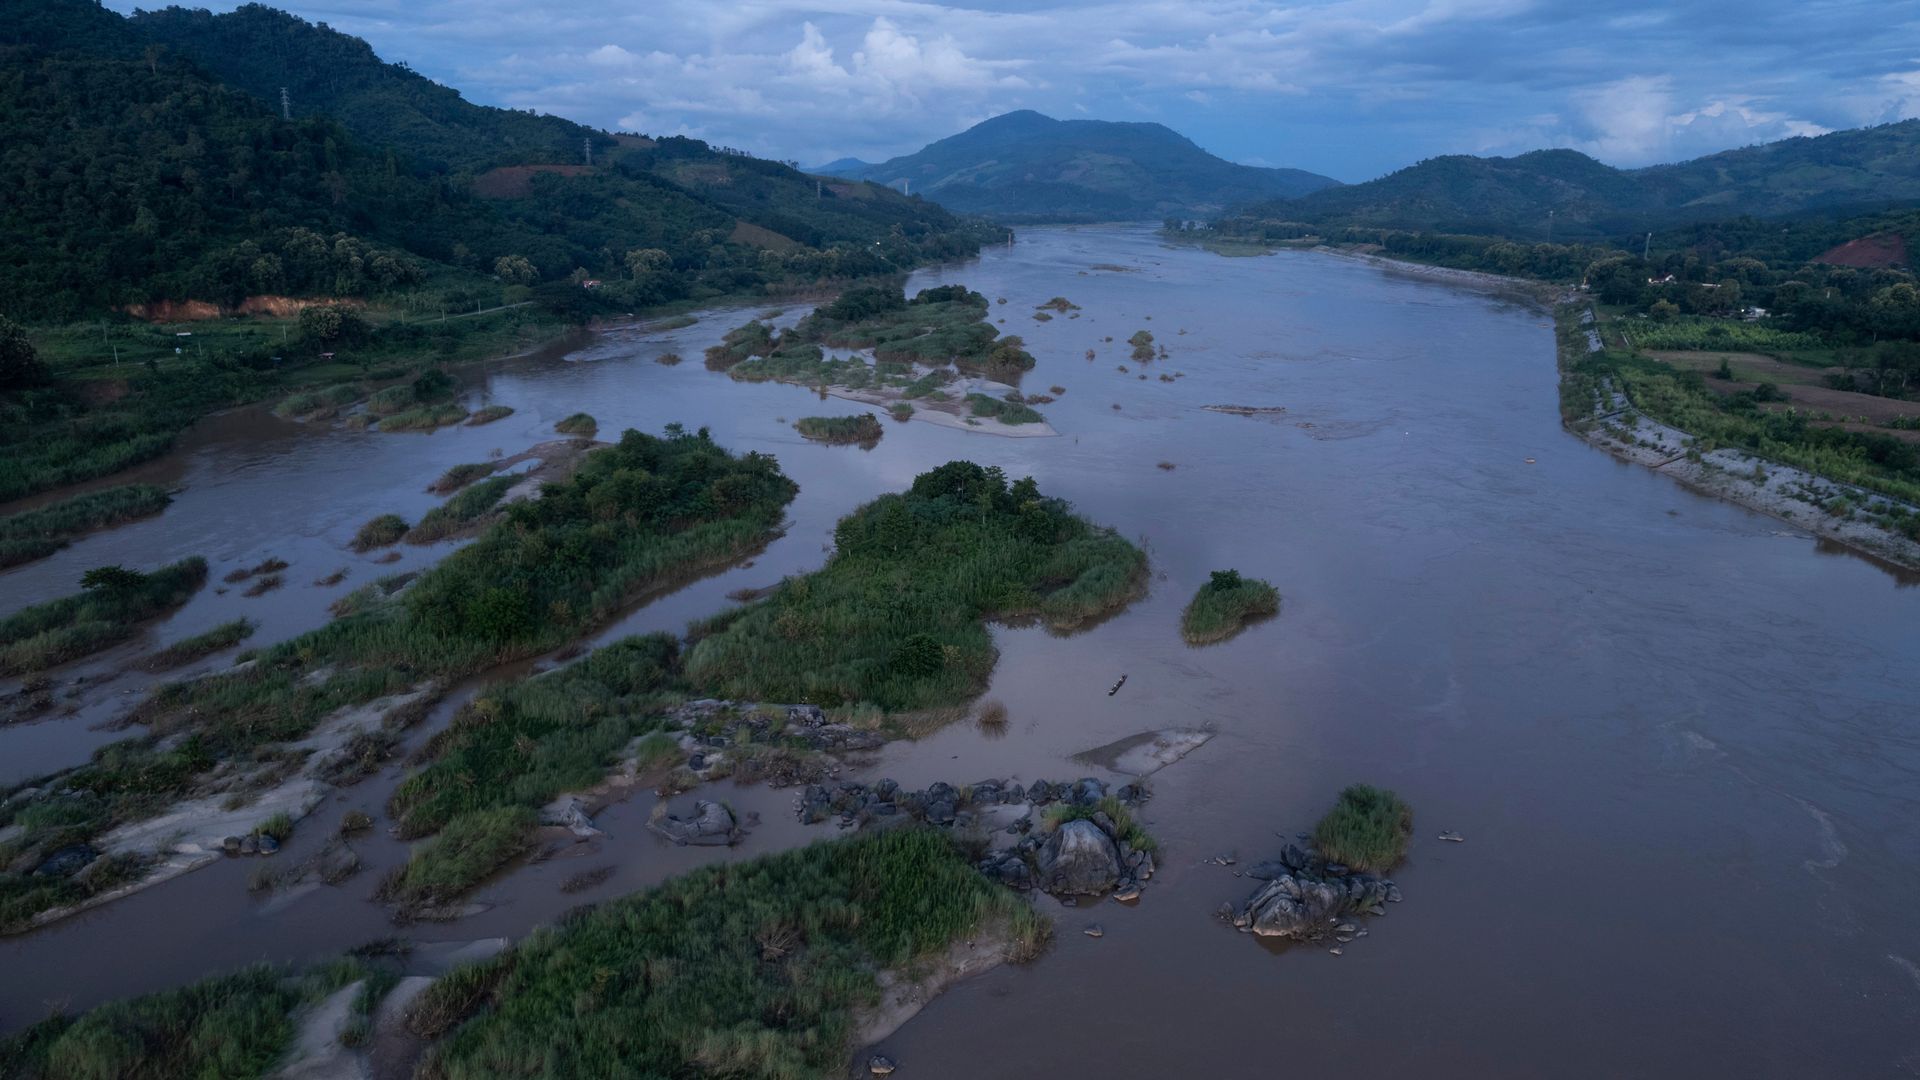 klima-krise: das mekong-dilemma - ein fluss, sieben staaten und 60 millionen menschen